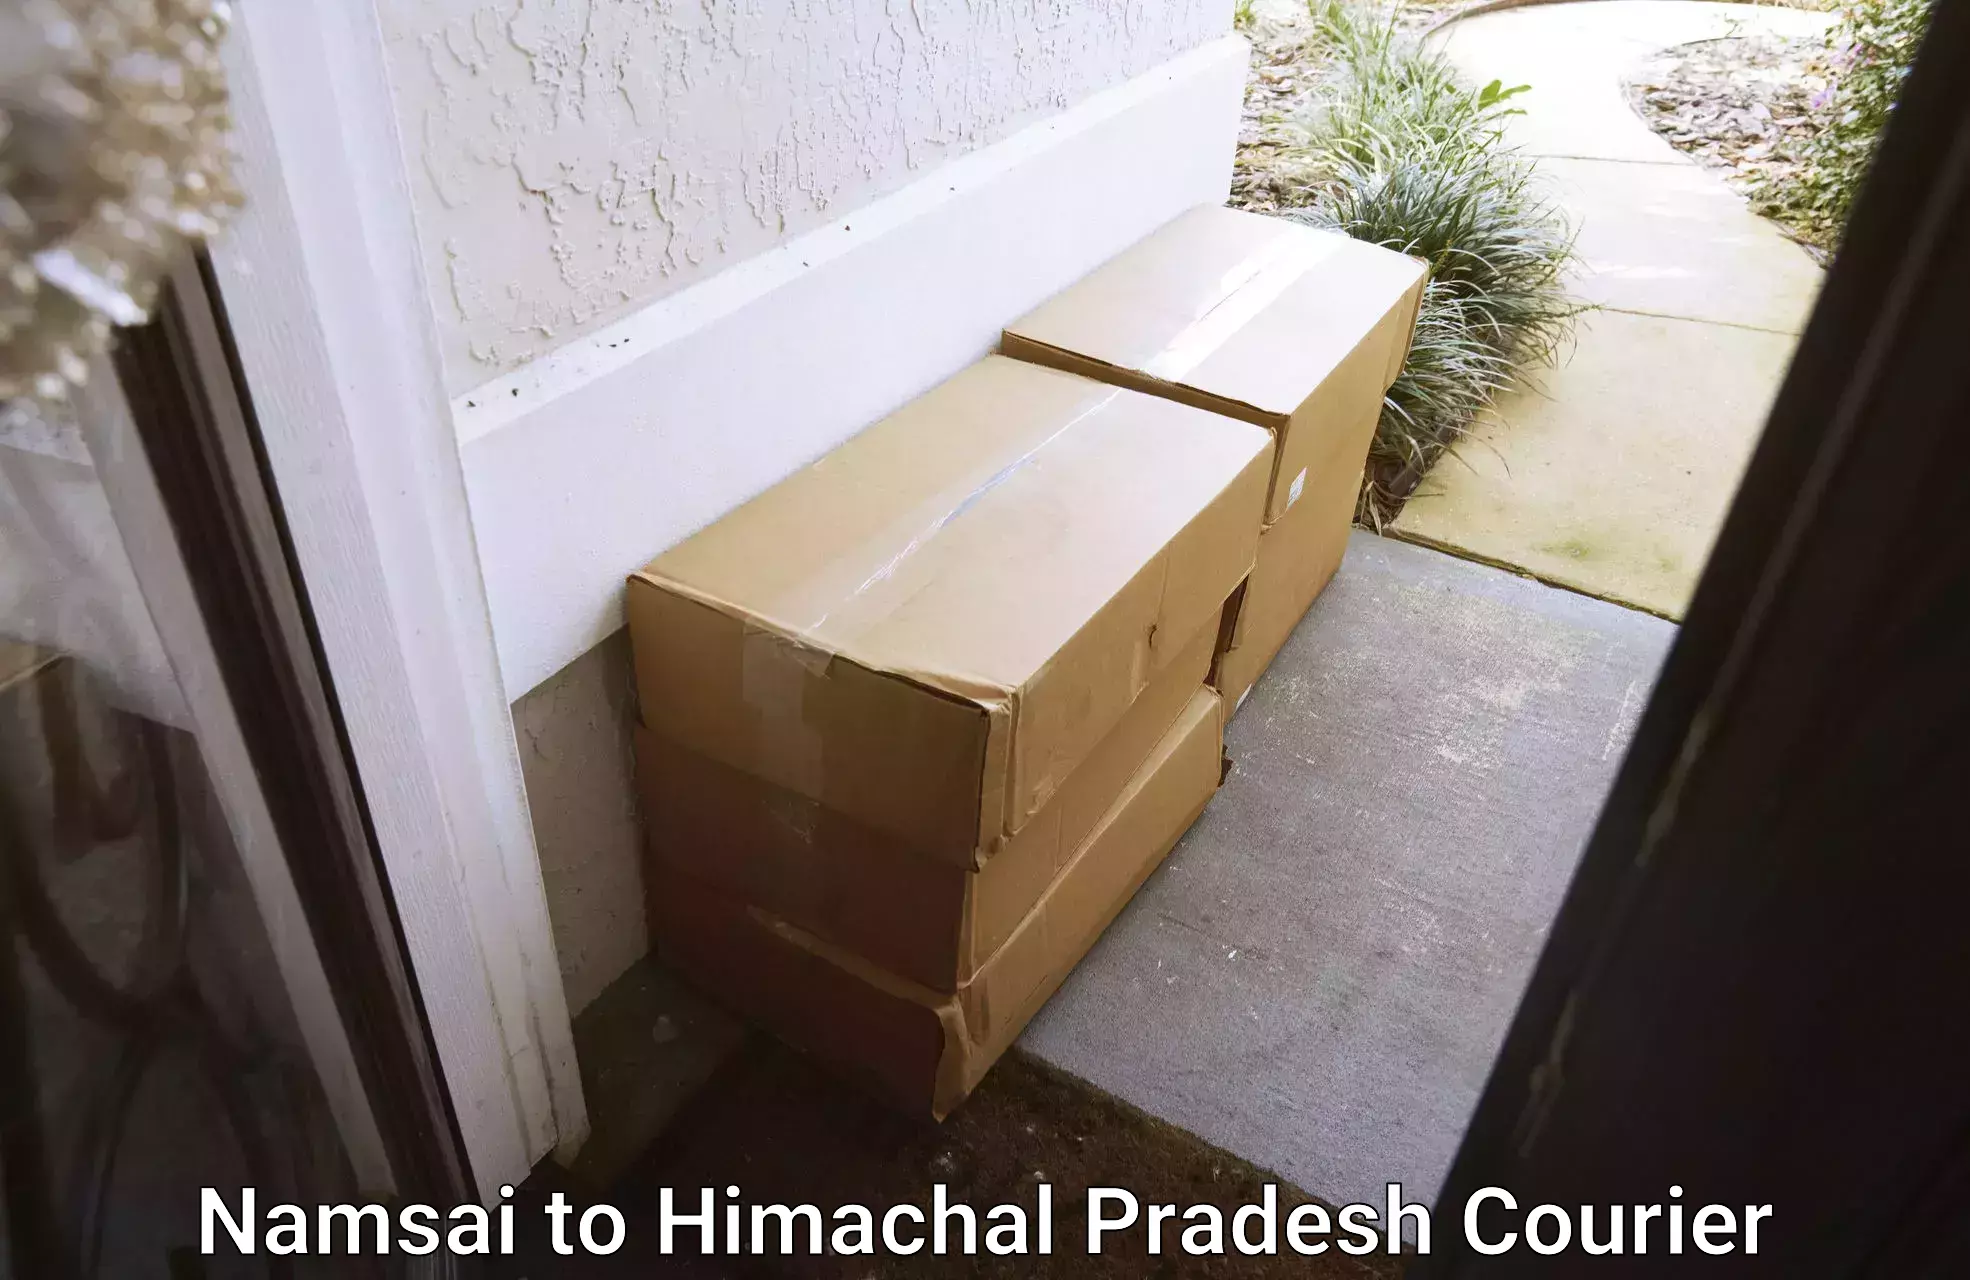 Efficient cargo handling Namsai to Himachal Pradesh